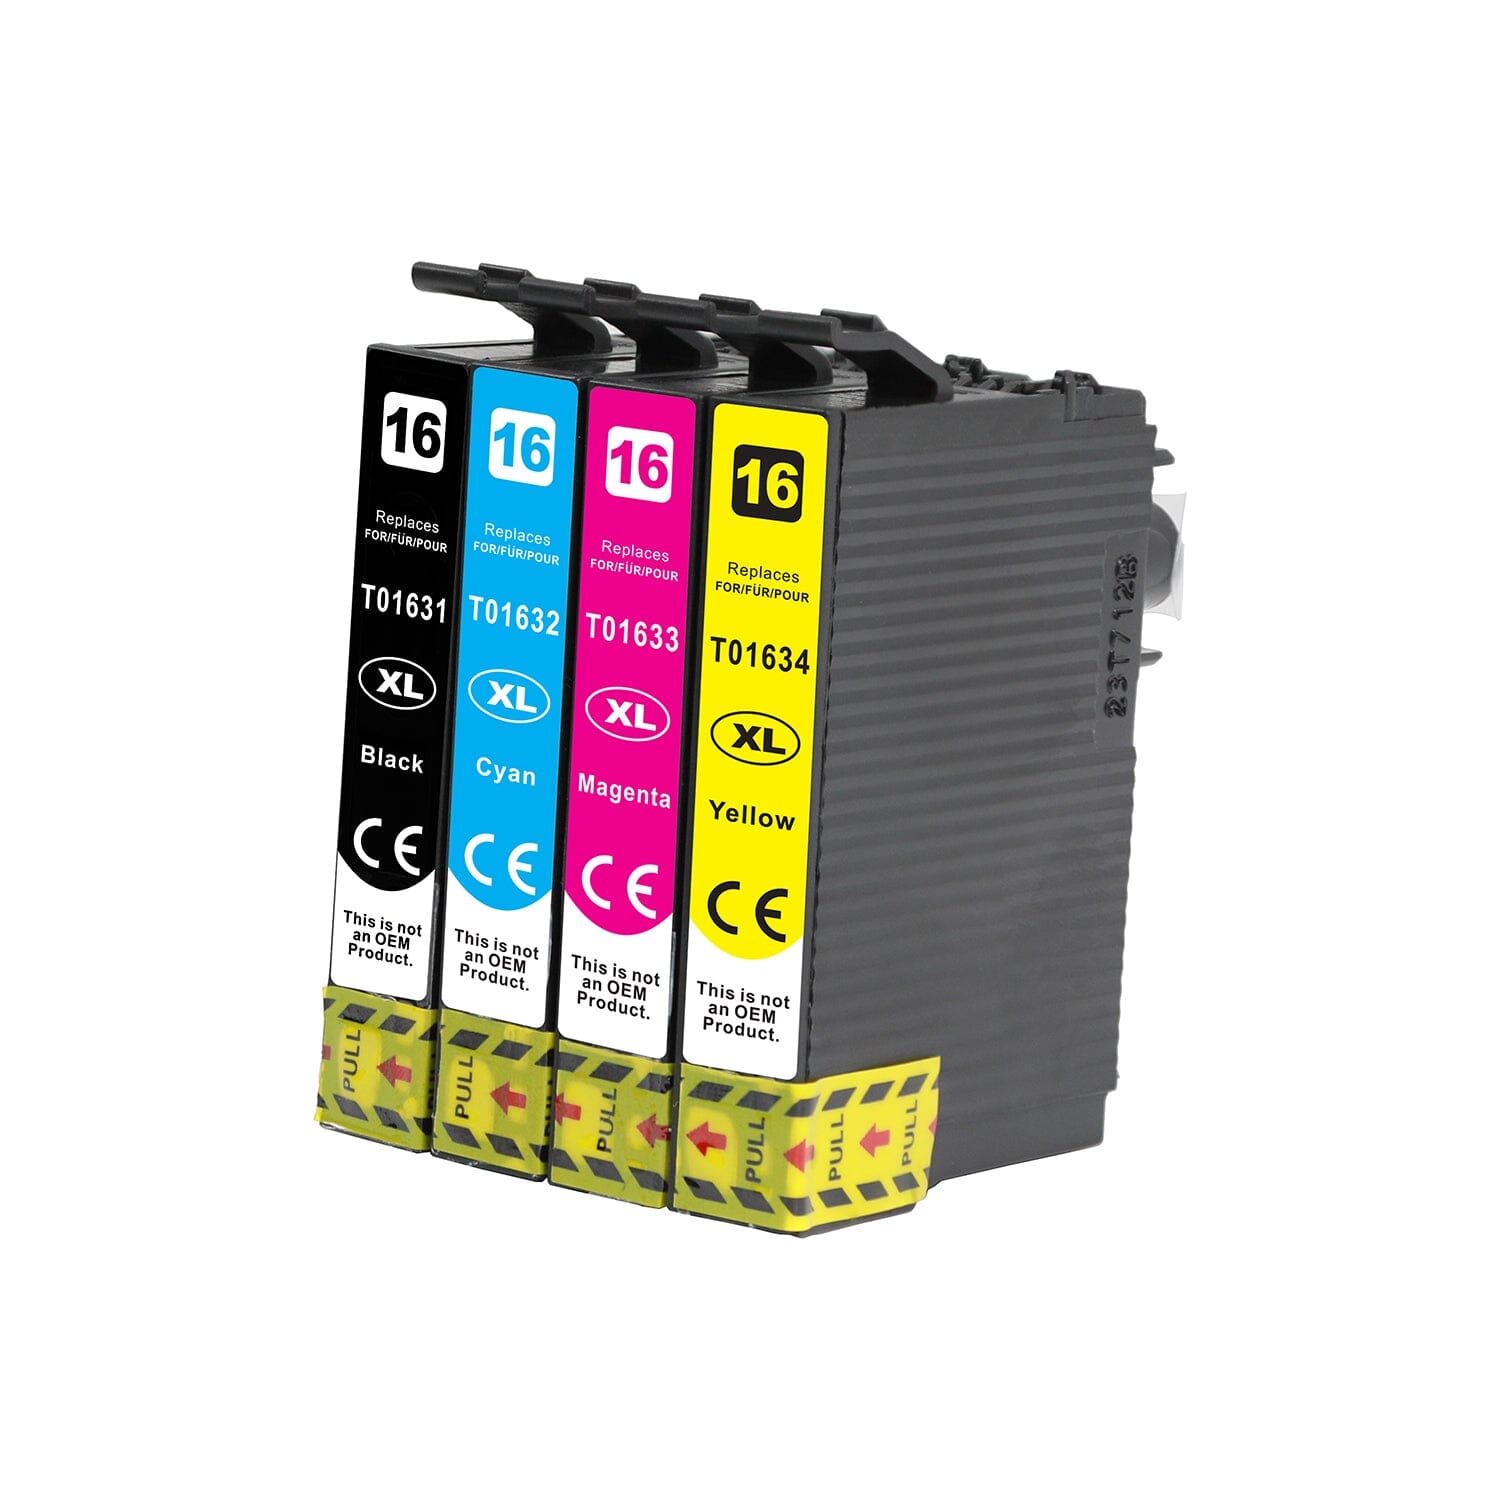 Billede af Pakke sæt Epson 16XL 4 farver BK-C-M-Y alternativ 60 ml